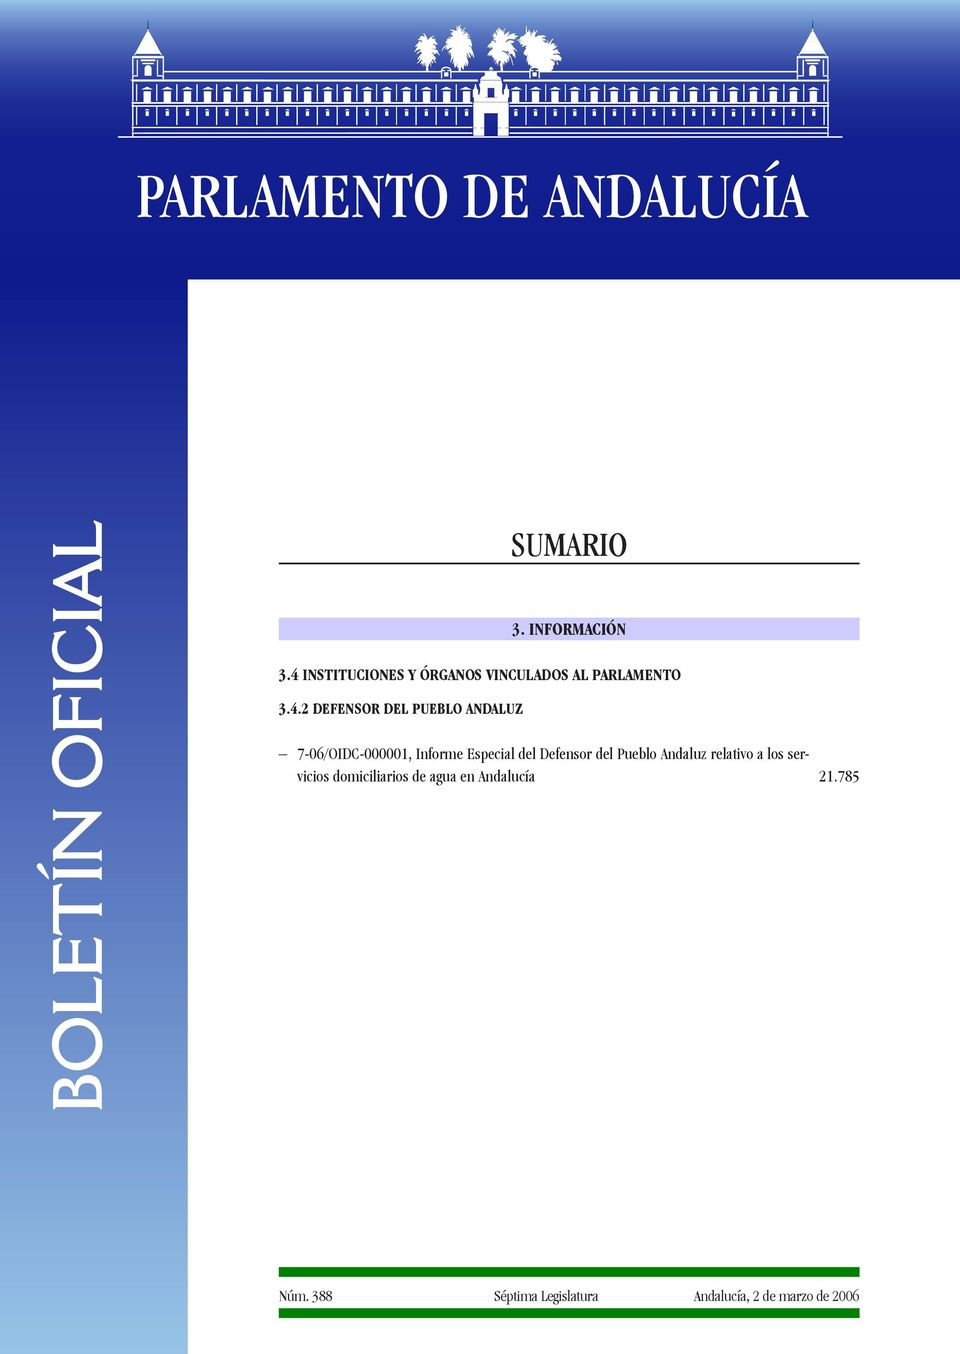 7-06/OIDC-000001, Informe Especial del Defensor del Pueblo Andaluz relativo a los